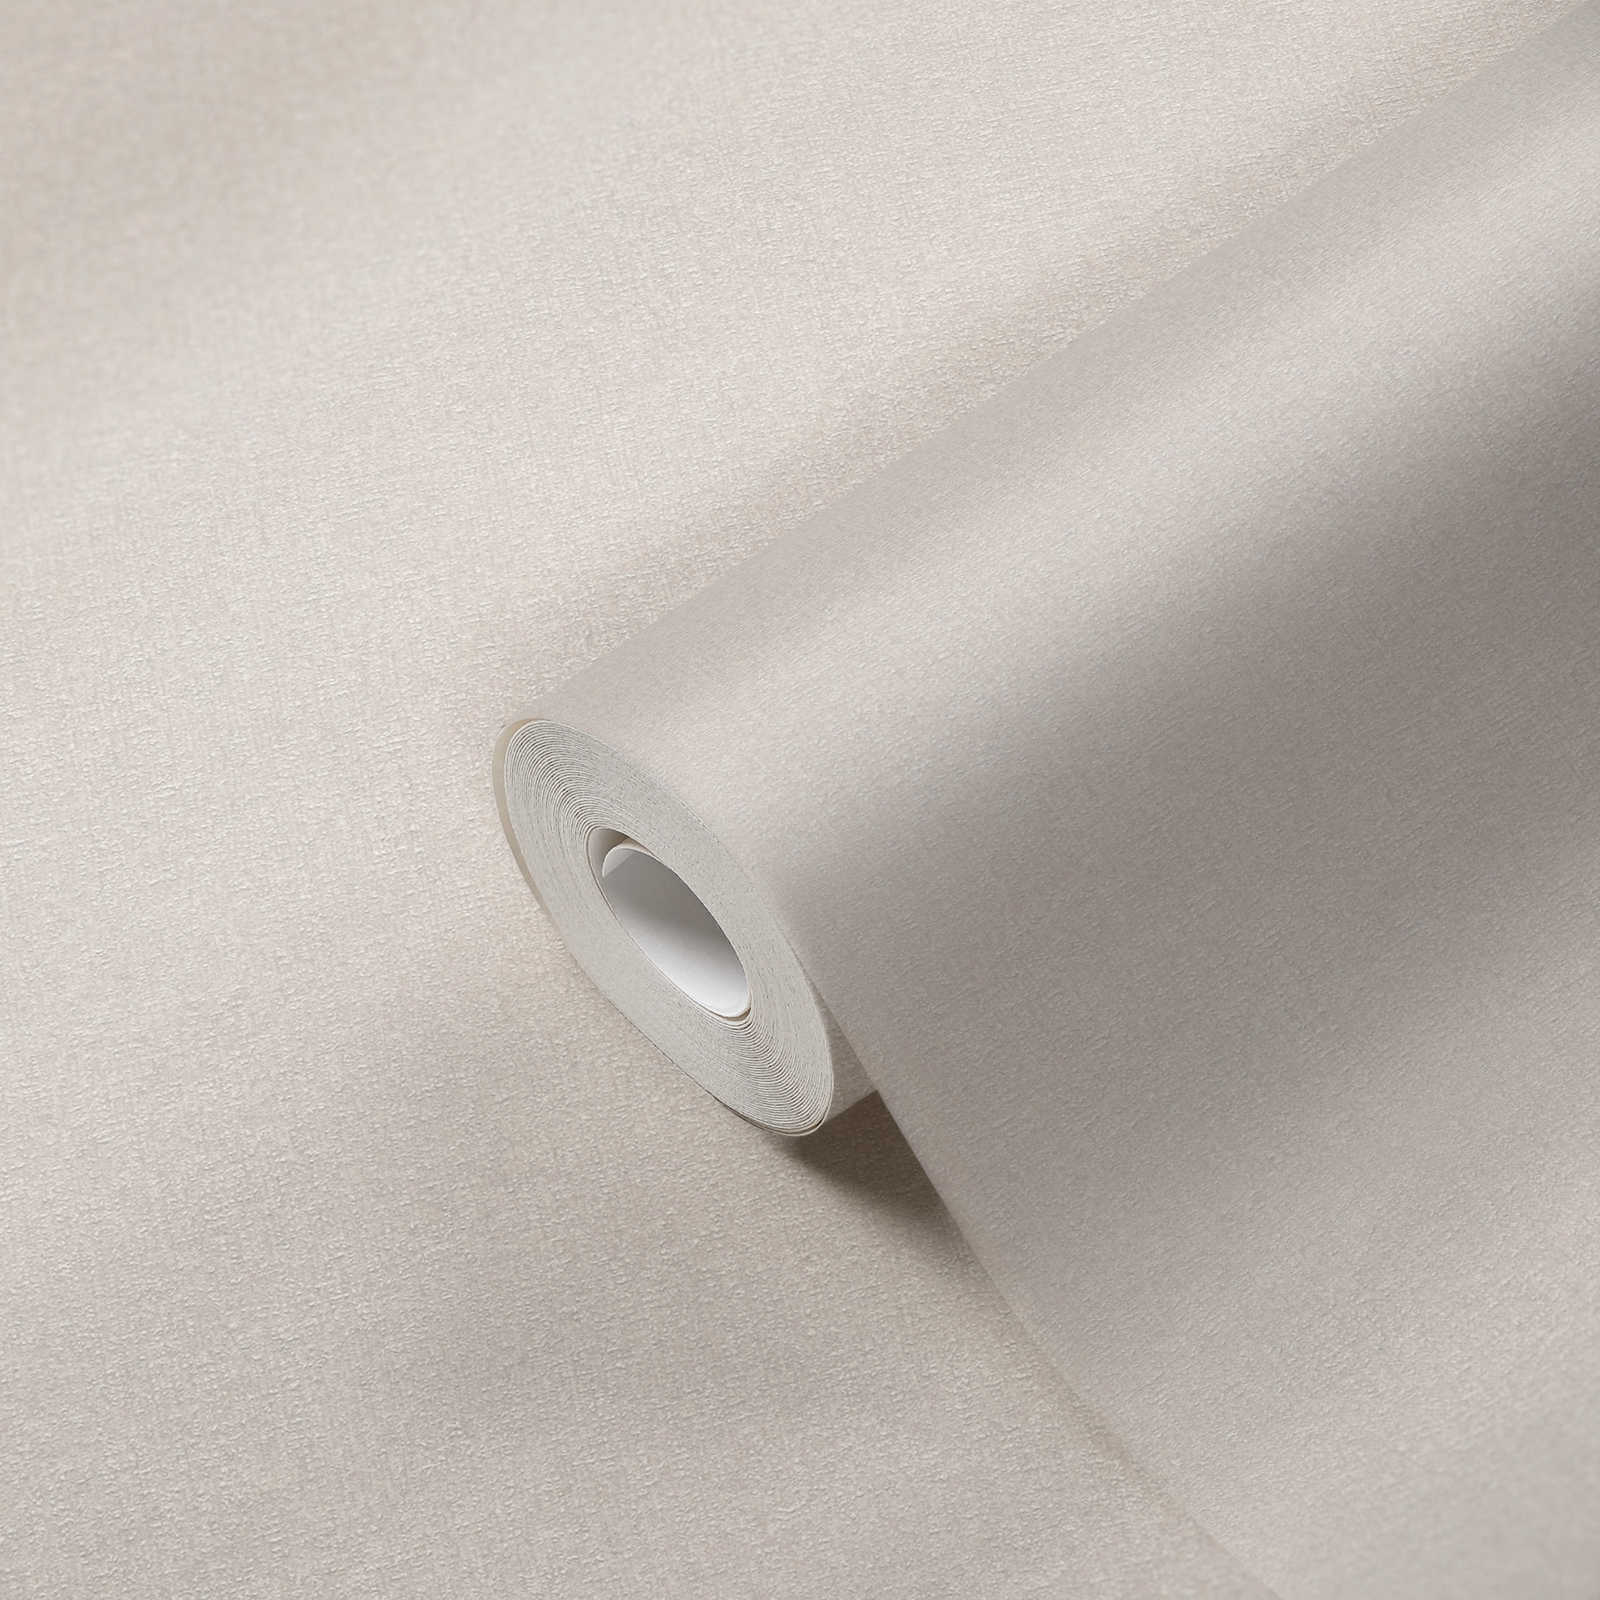             Carta da parati in tessuto non tessuto con struttura fine - crema, bianco, grigio
        